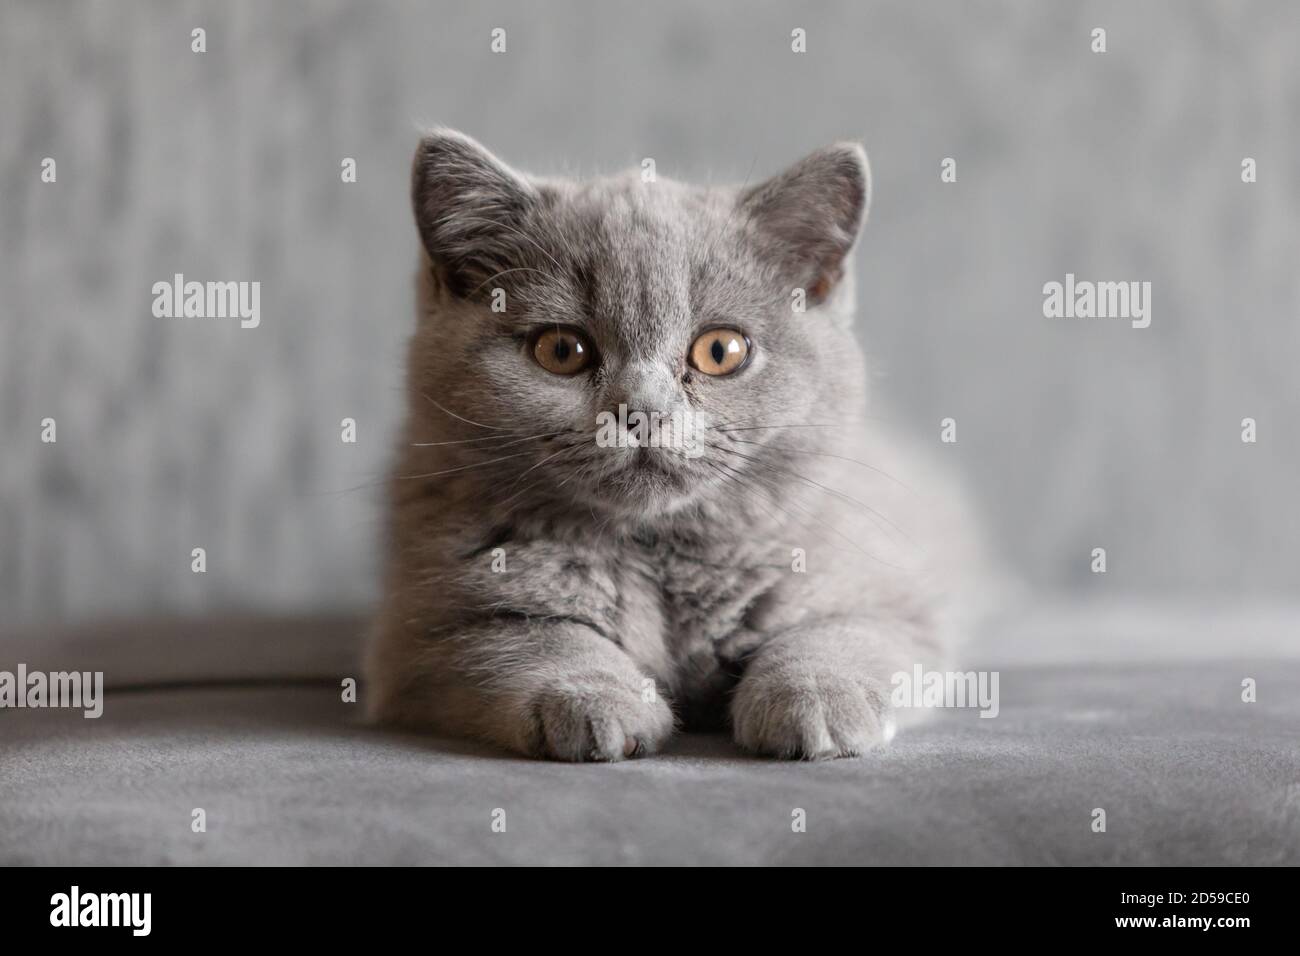 Porträt eines britischen Kurzhaar-blauen Kätzchens, das auf dem Teppich liegt Stockfoto